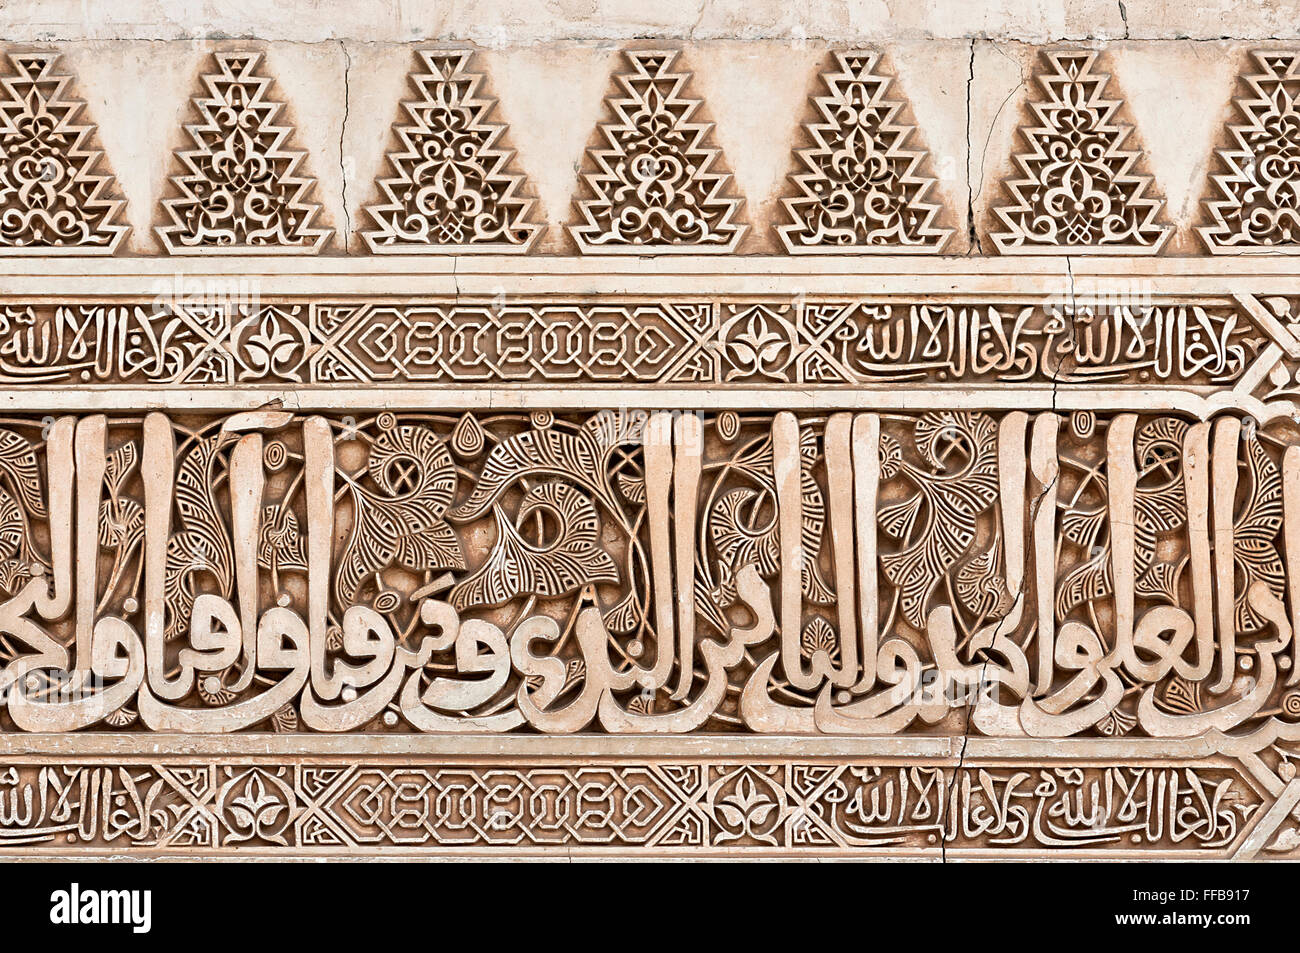 Friso tallado con caracteres de Caligrafía Árabe y arabescos, Nazrid patio del palacio, de la Alhambra, Granada, Andalucía, España Foto de stock